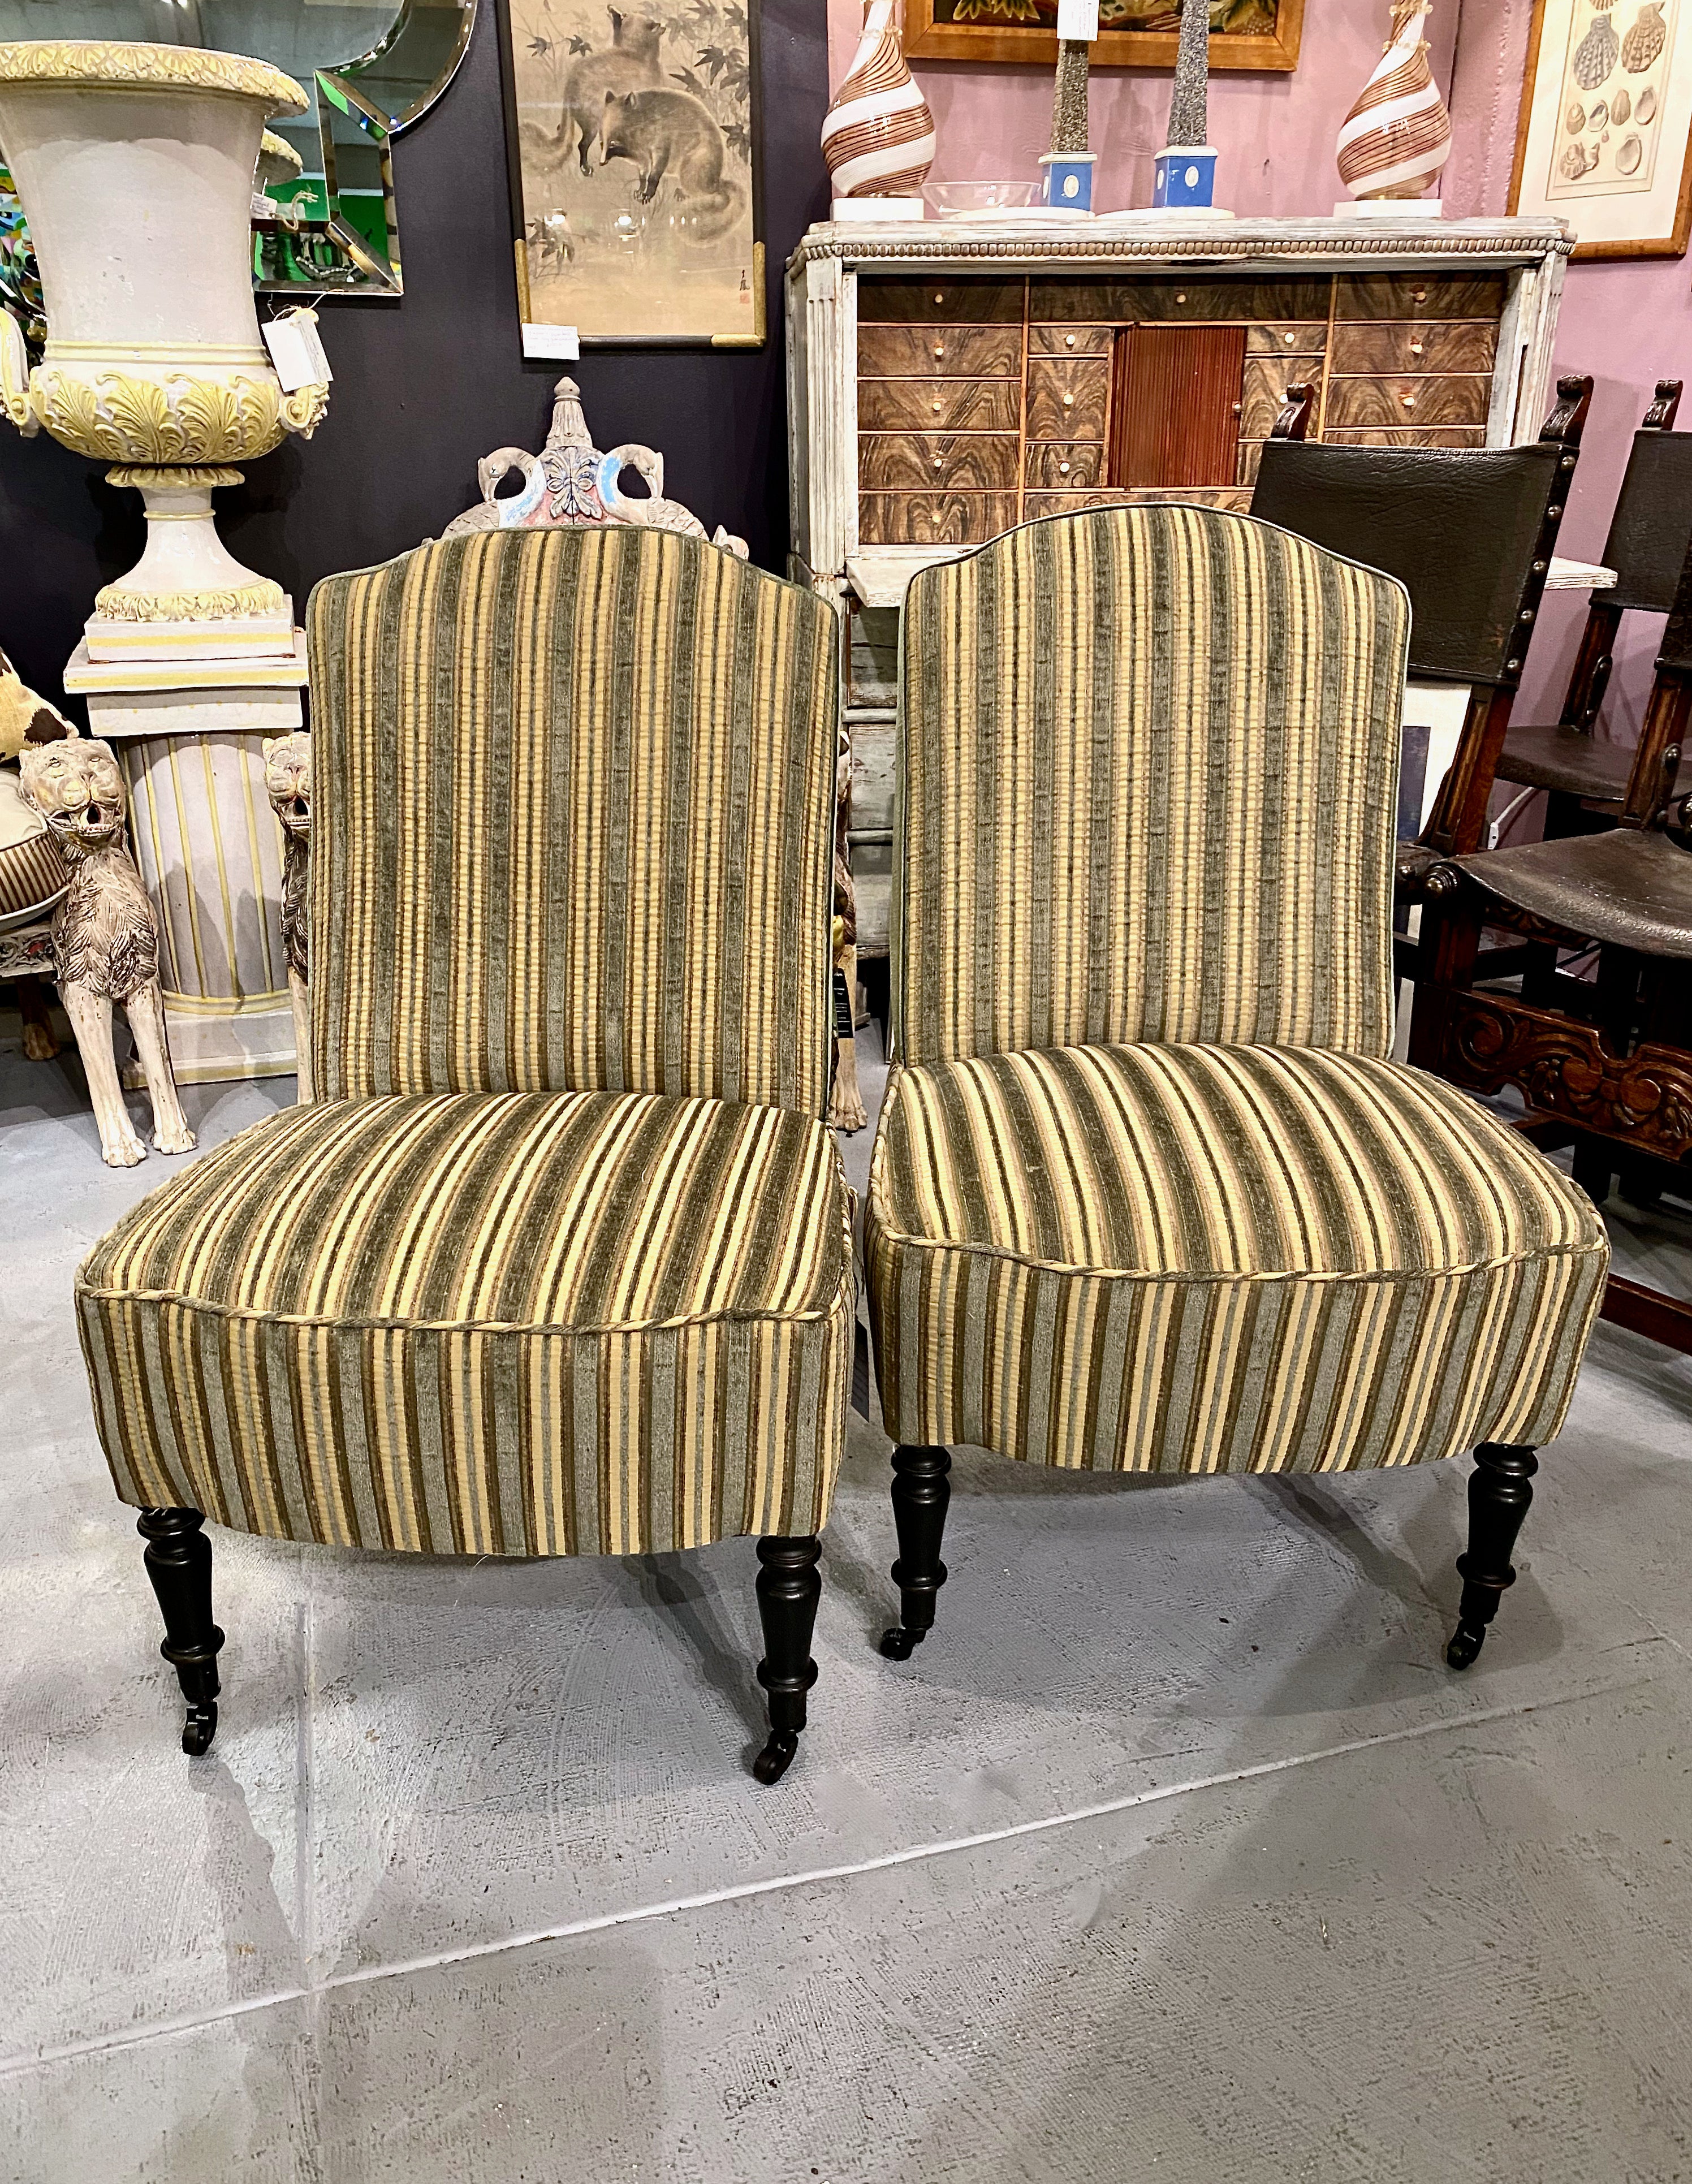 Il s'agit d'une superbe paire de chauffeuses ou de chaises à pantoufles Napoléon III datant des années 1860-1875. Les chaises présentent des crêtes de dossier arquées, avec des sièges et des dossiers rembourrés de façon serrée. Les chaises sont